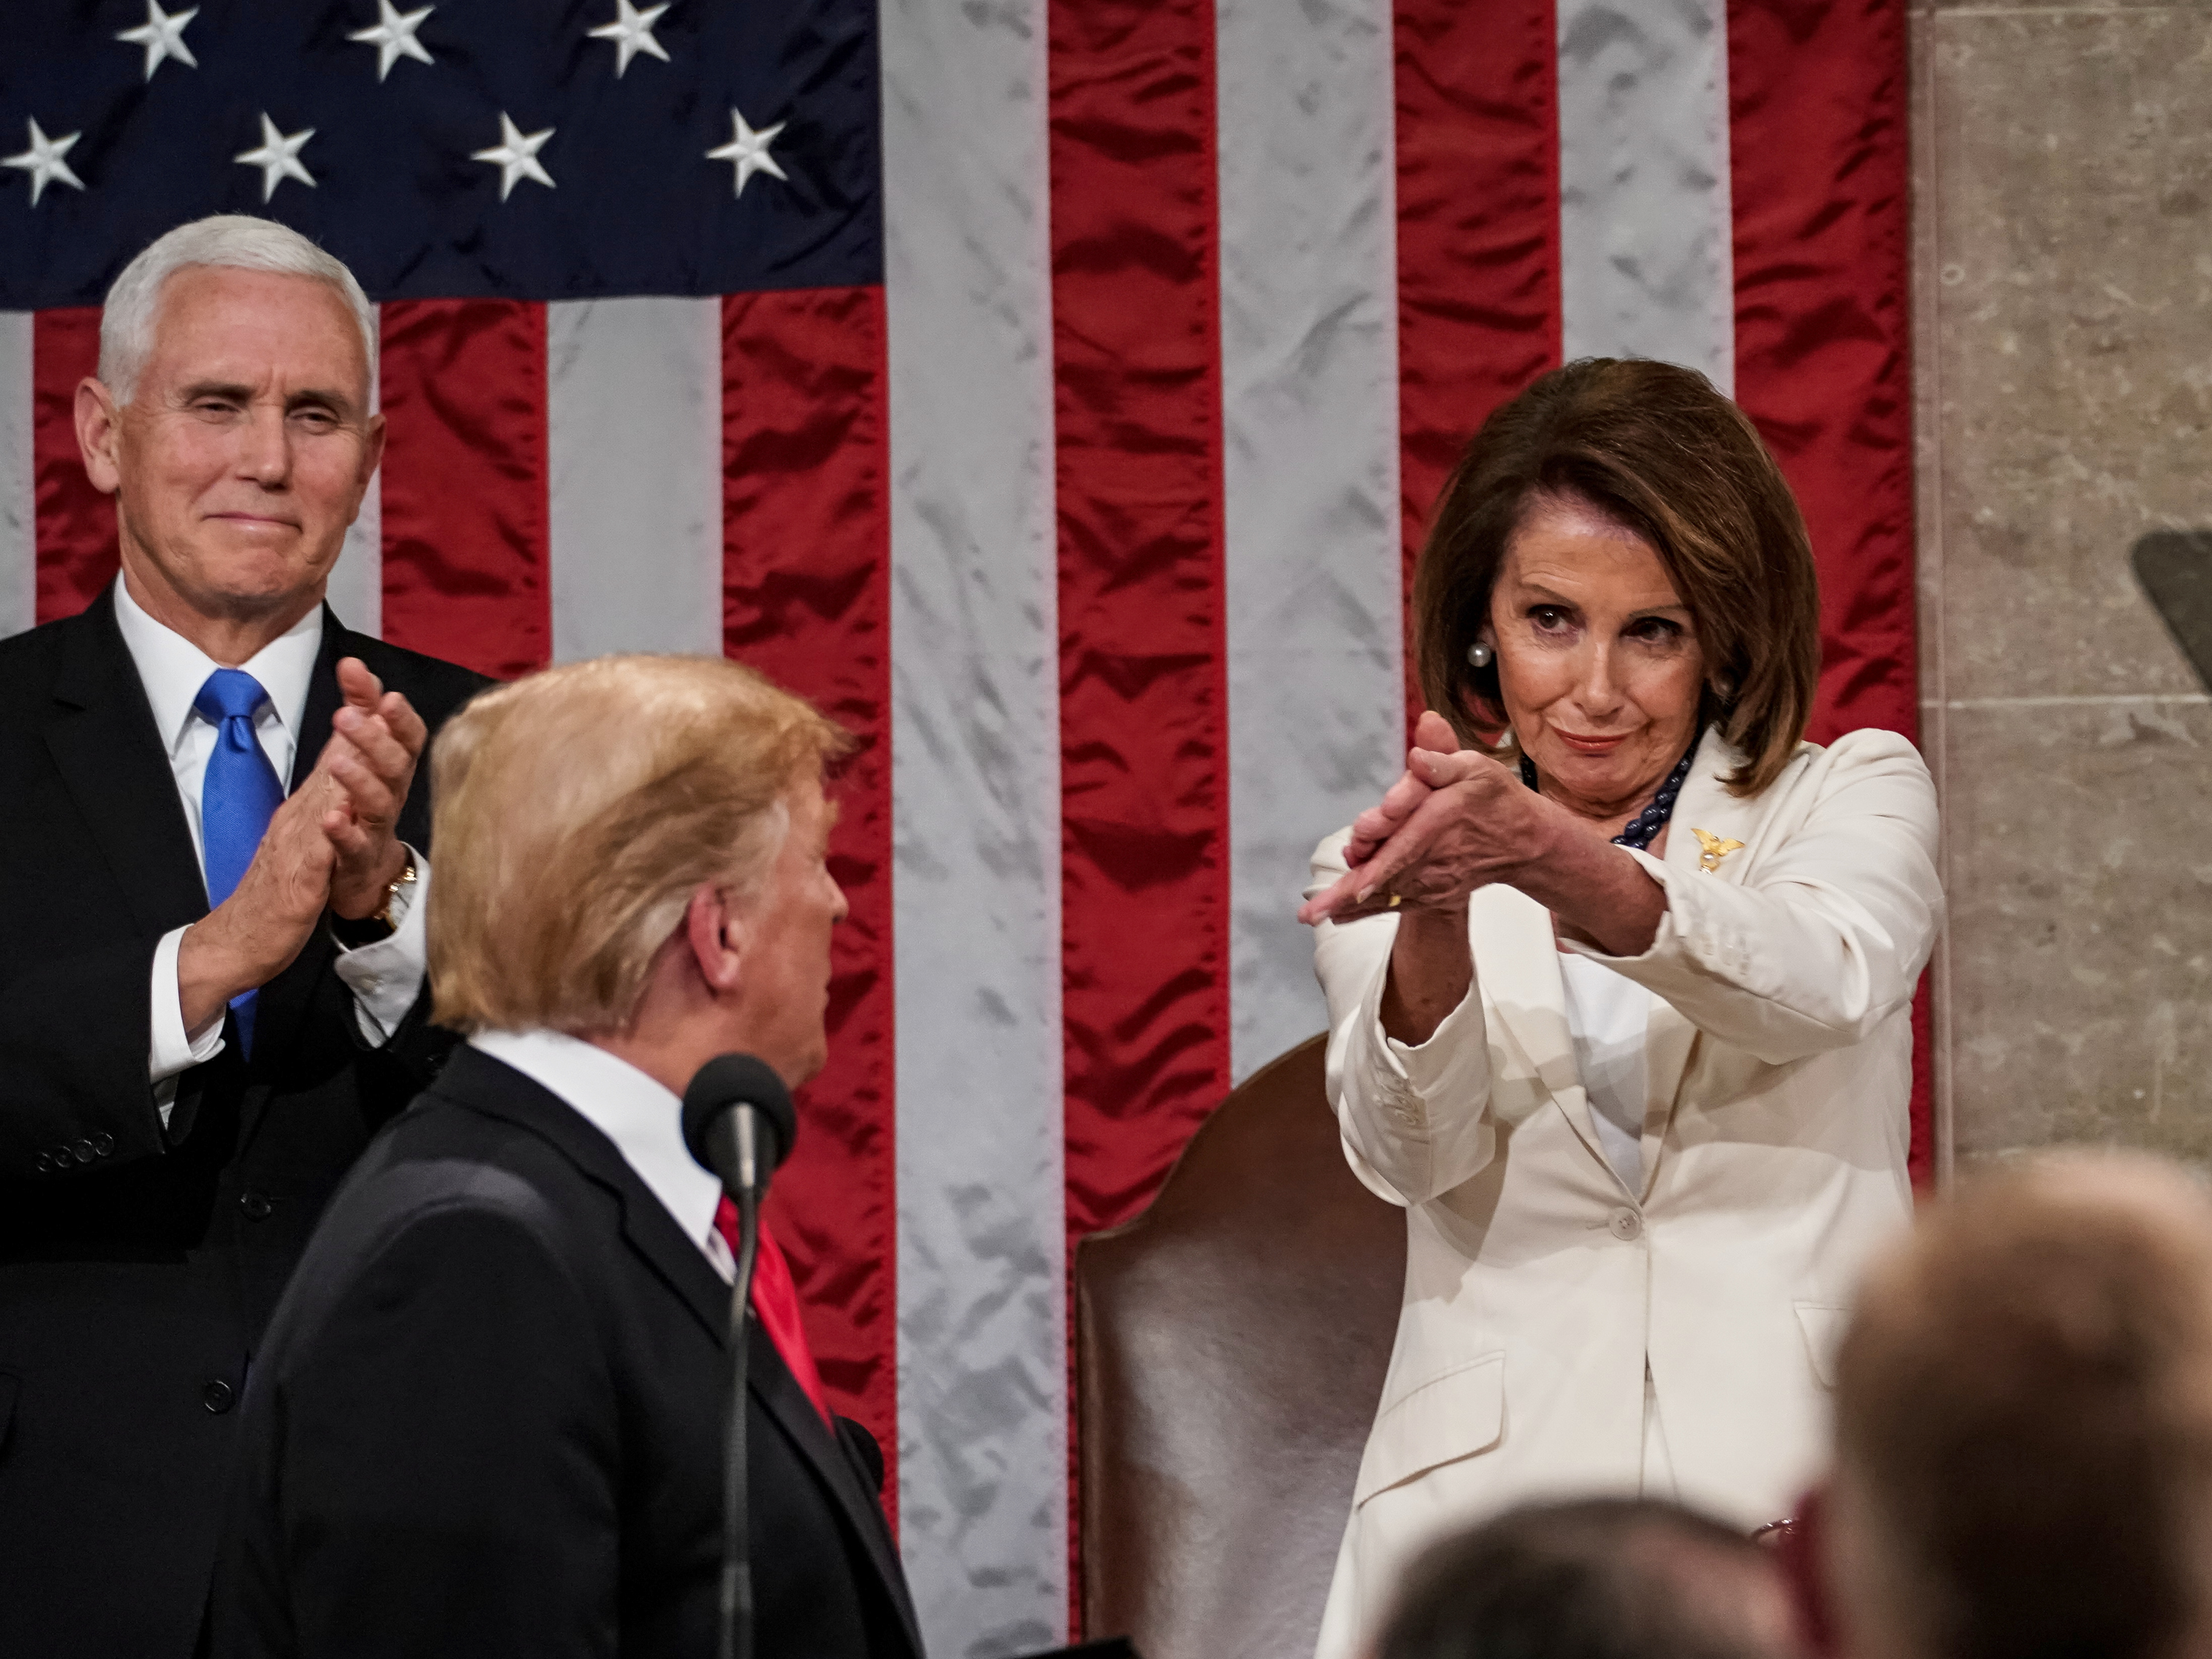 Cynisch applaus van de Democratische voorzitter van het Huis van Afgevaardigden Nancy Pelosi tijdens de State of the Union van president Trump op 5 februari 2019